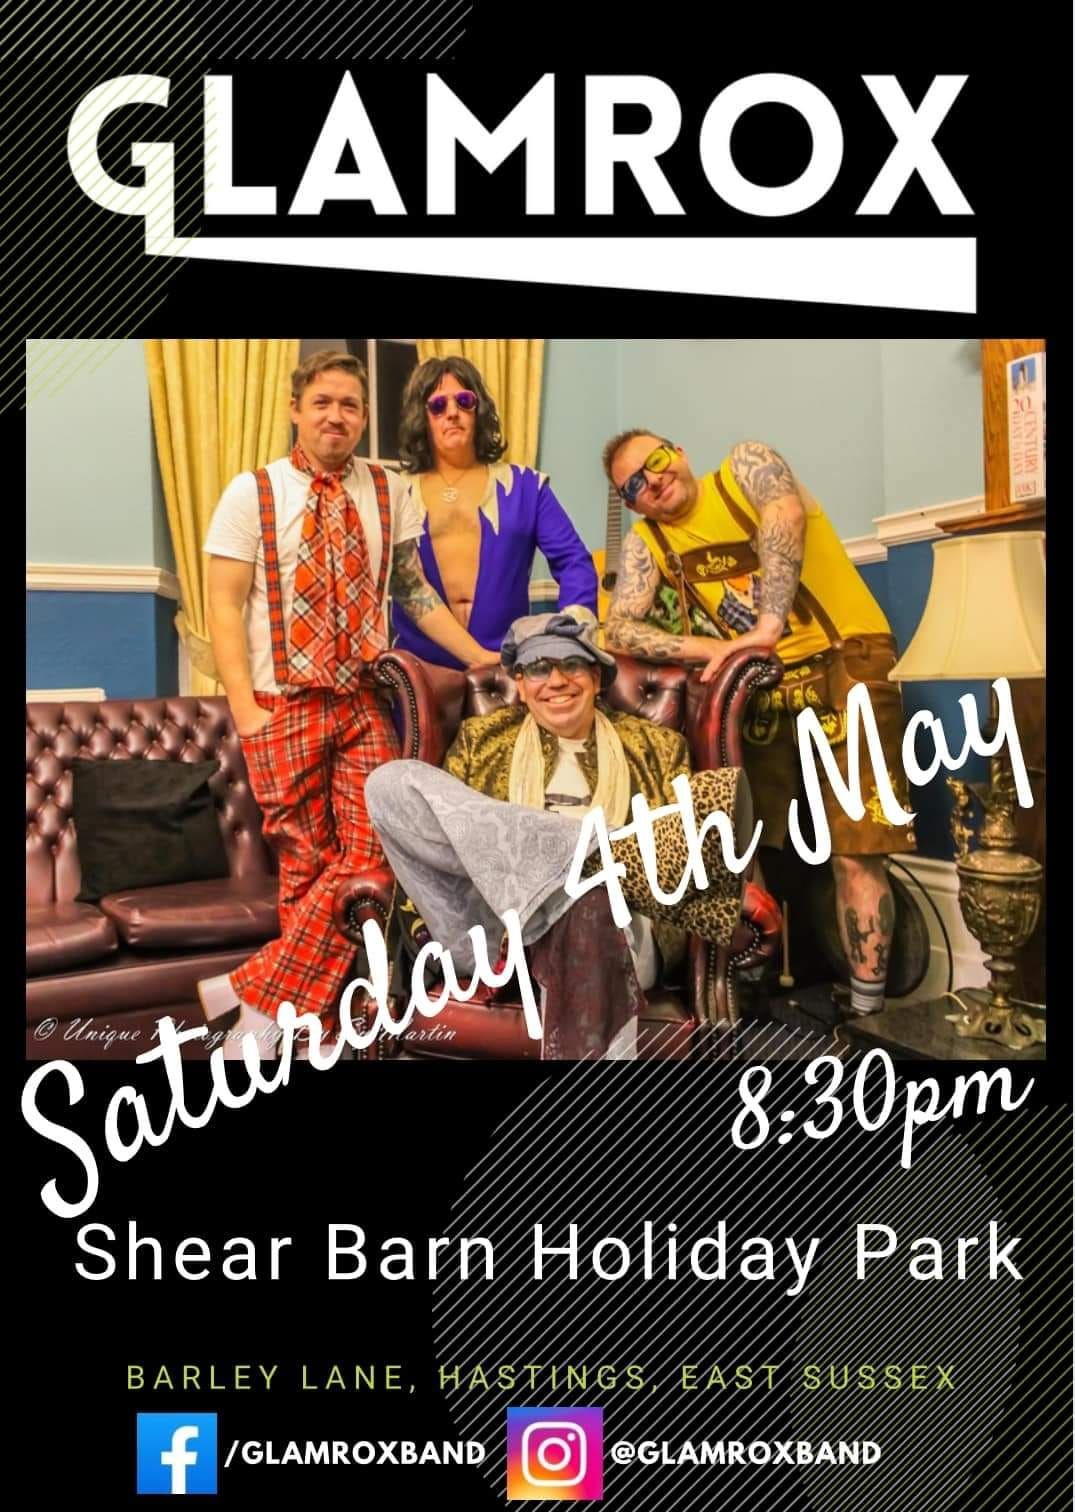 GlamRox play Shearbarn Holiday Park, Hastings 